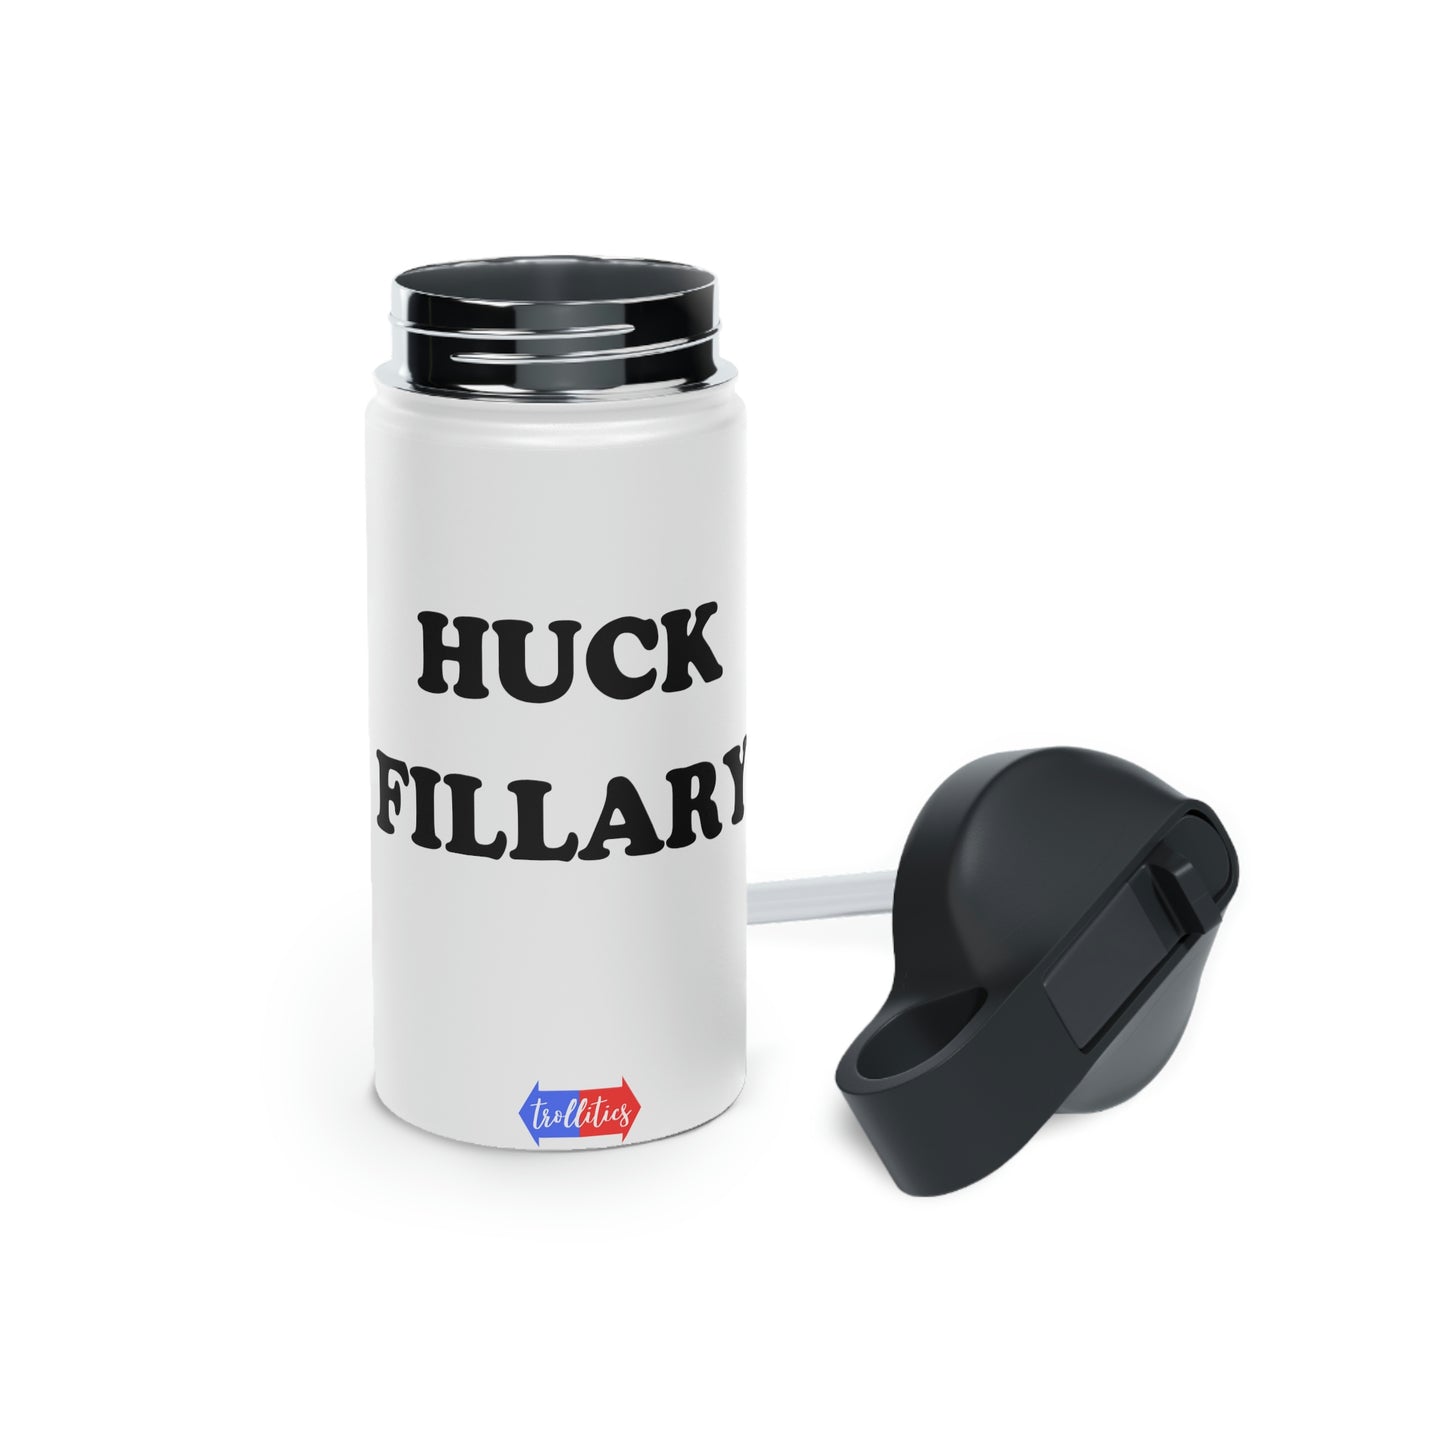 Huck Fillary Stainless Steel Water Bottle, Standard Lid